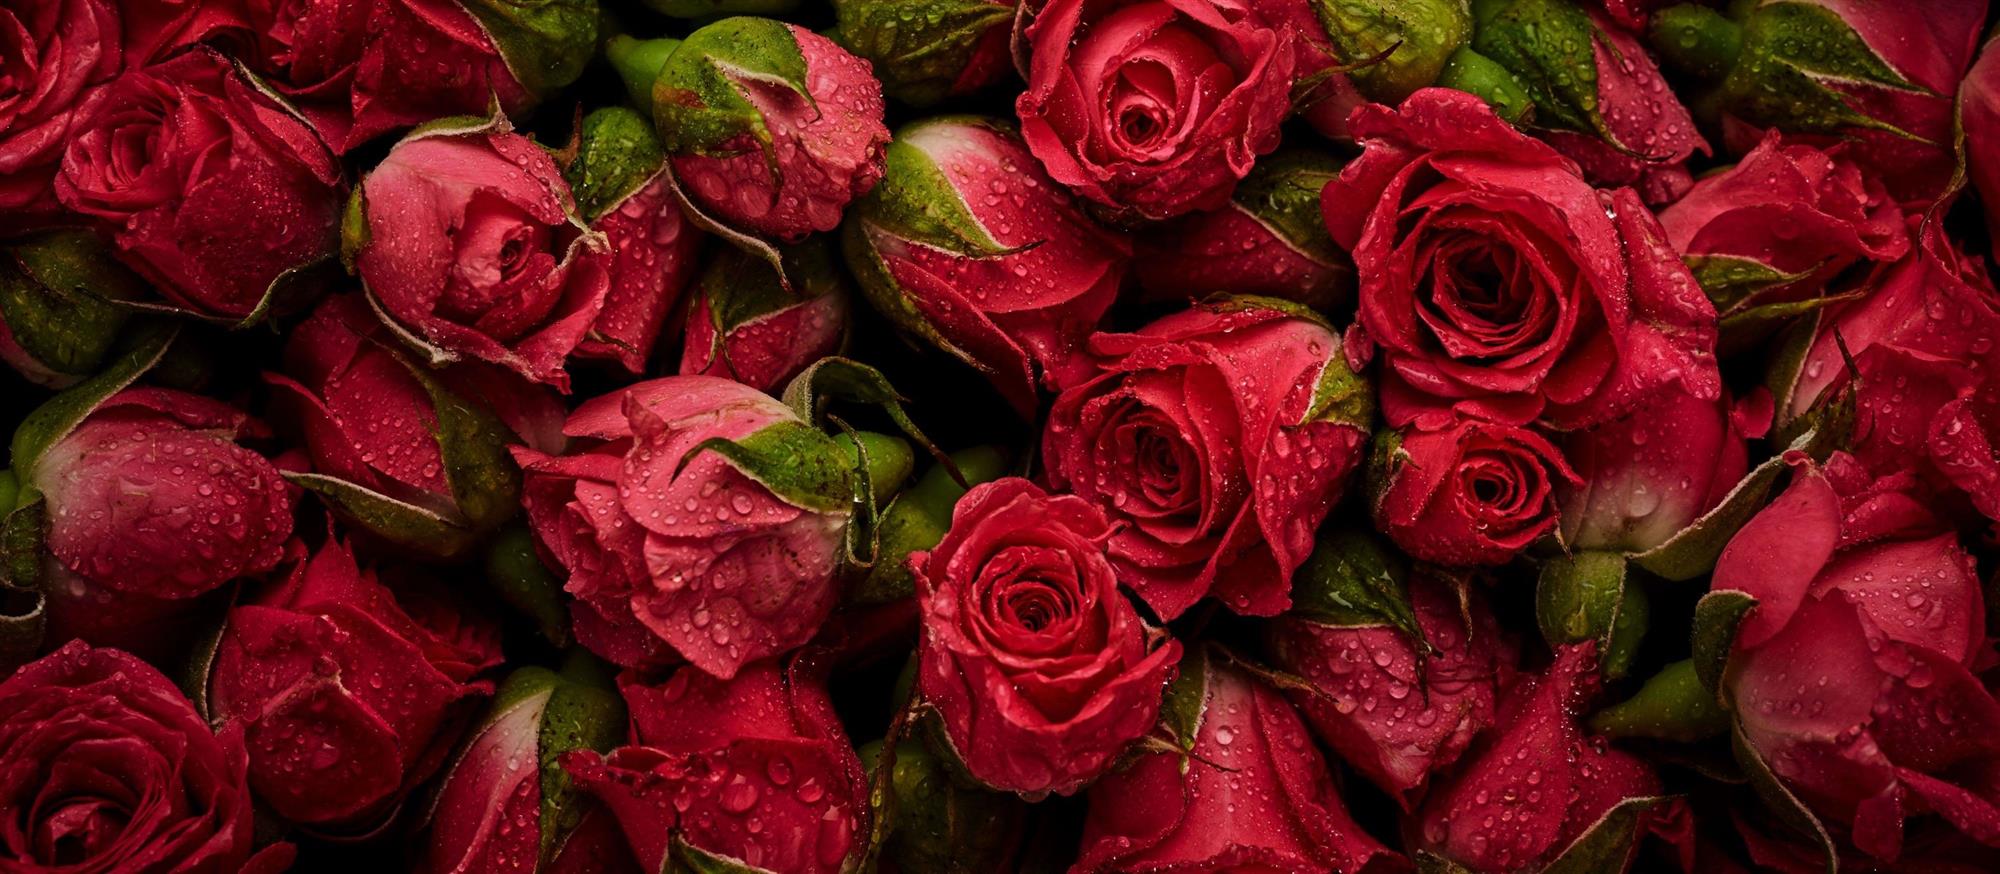 Self Photos / Files - Qatar Airways Cargo - Valentine's Day 21 - Flowers